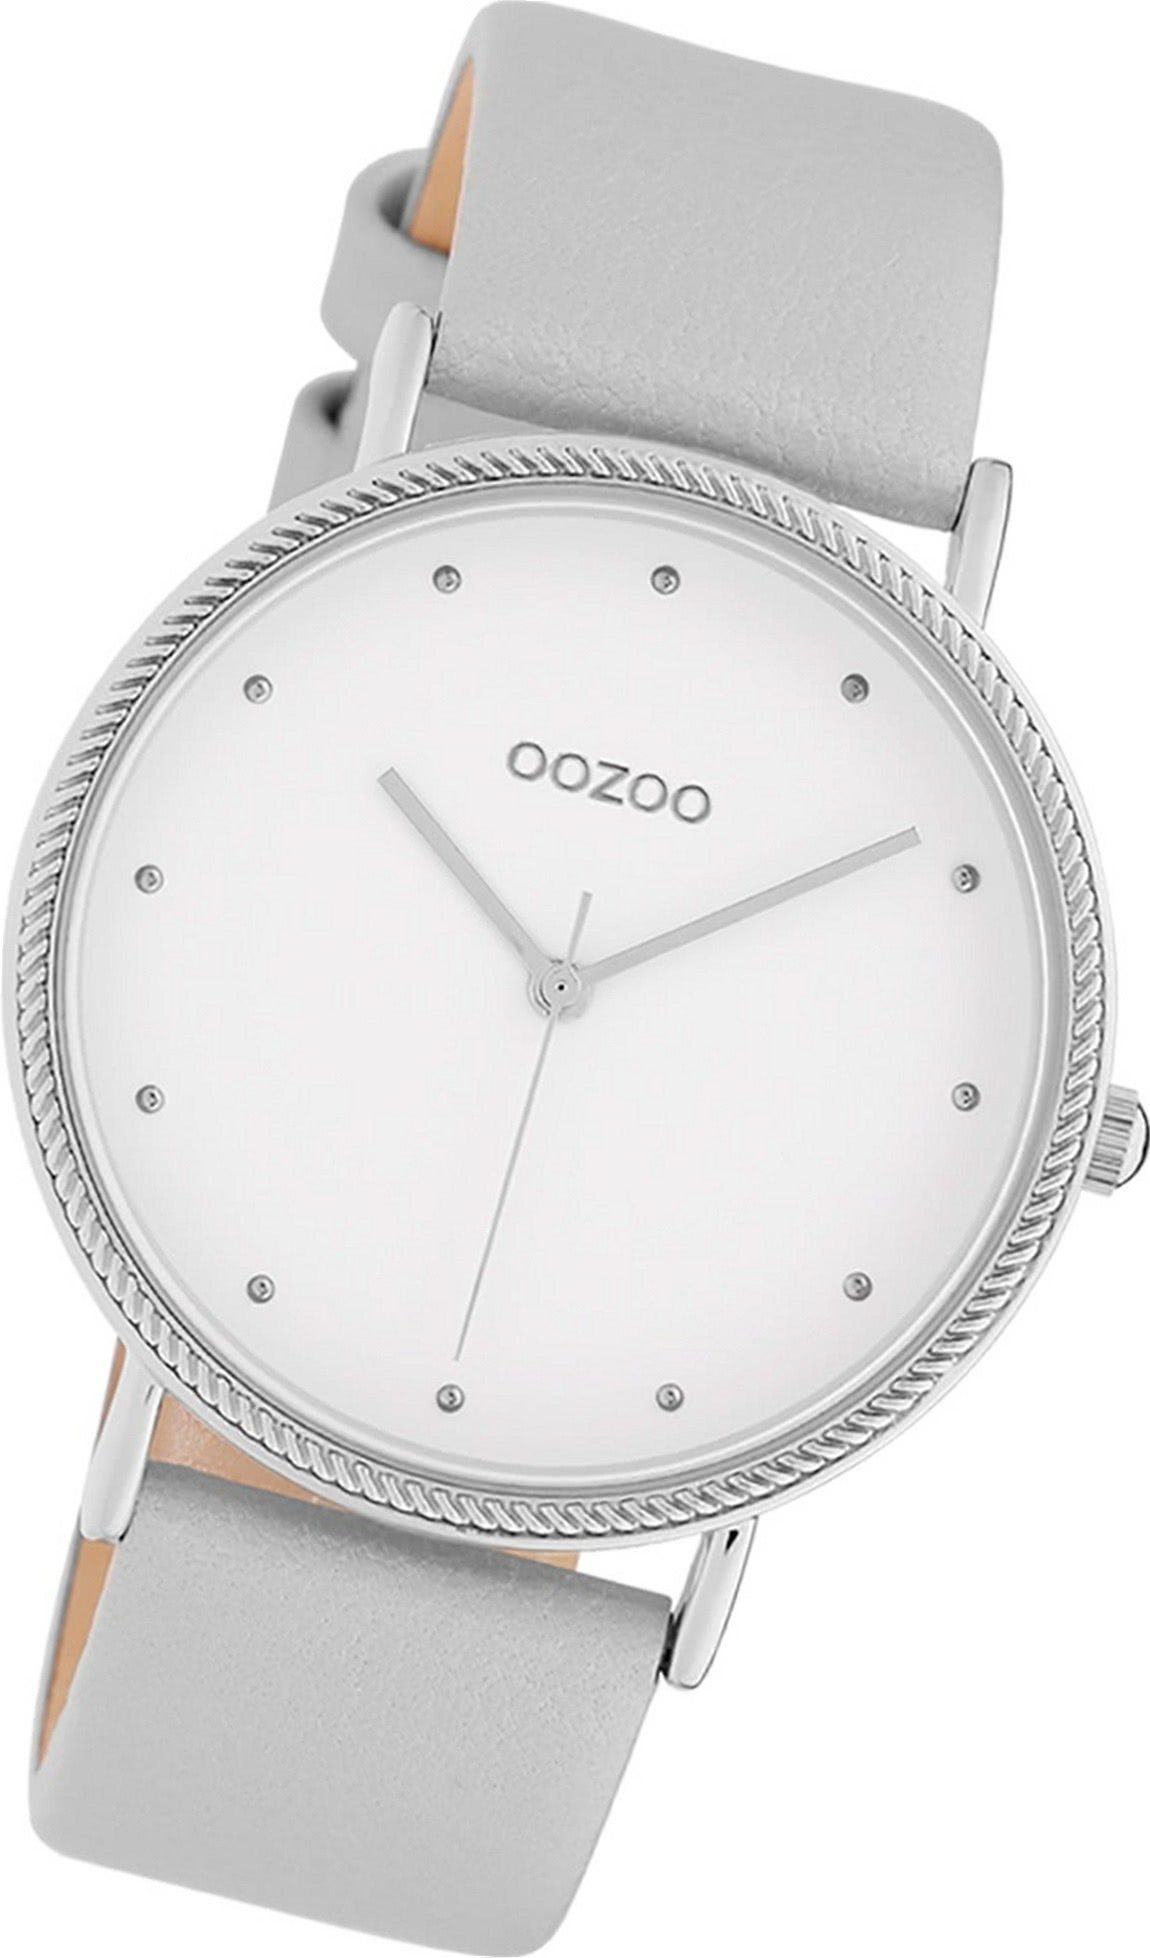 OOZOO Quarzuhr Oozoo Leder Uhr 40mm) rundes Lederarmband (ca. Gehäuse, Damen Analog, Damenuhr C10415 groß silber, grau